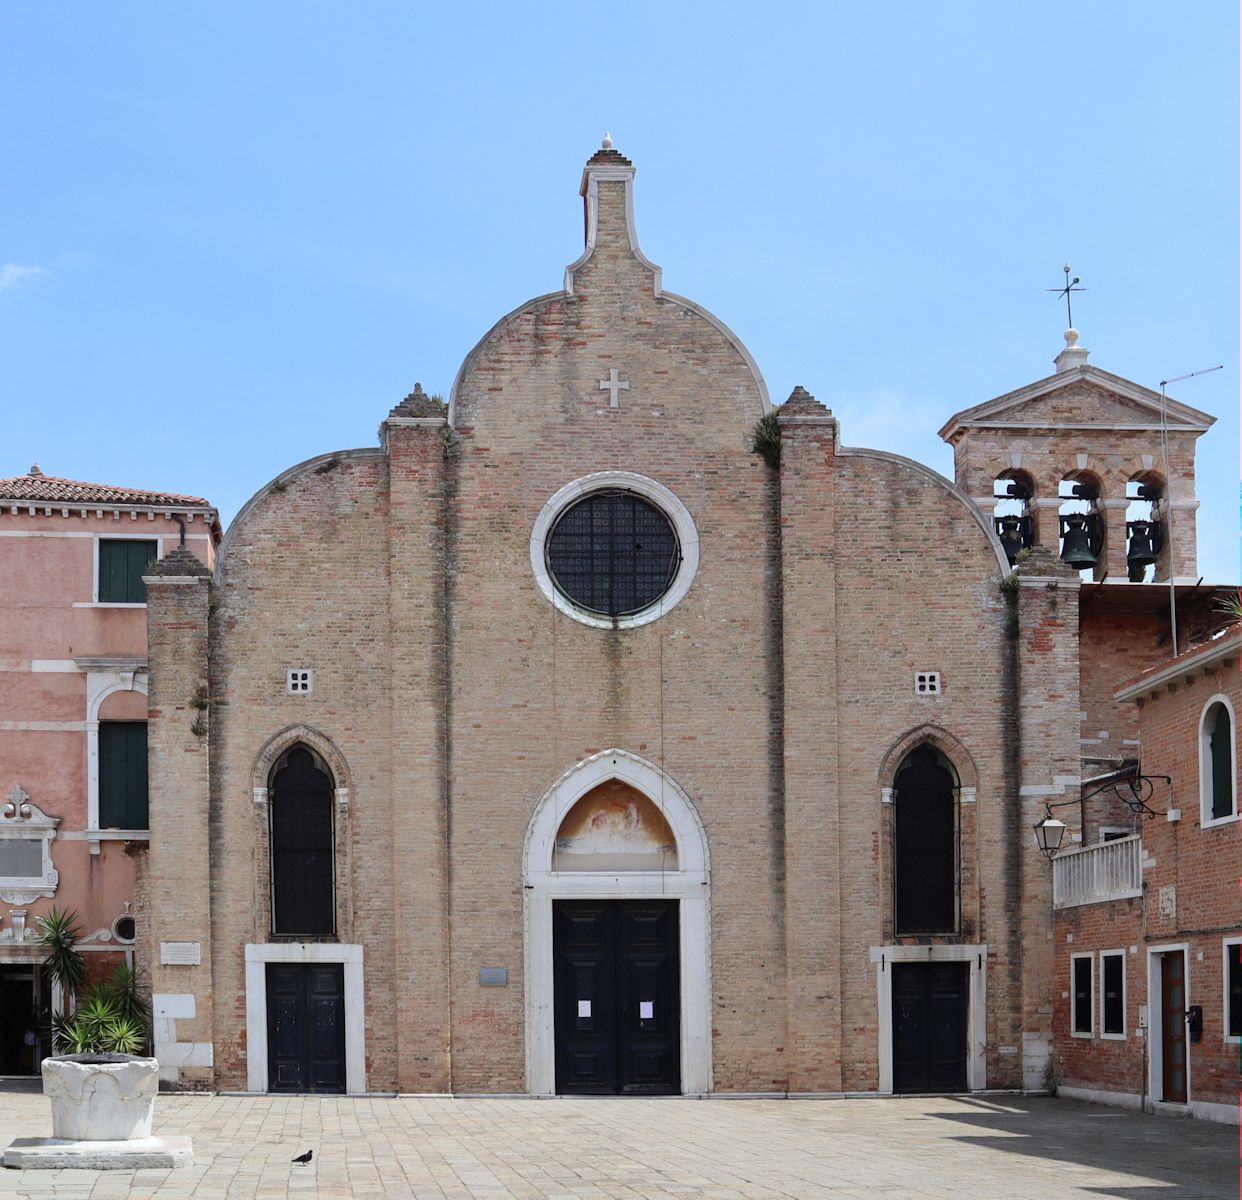 Kirche San Giovanni in Bragora in Venedig